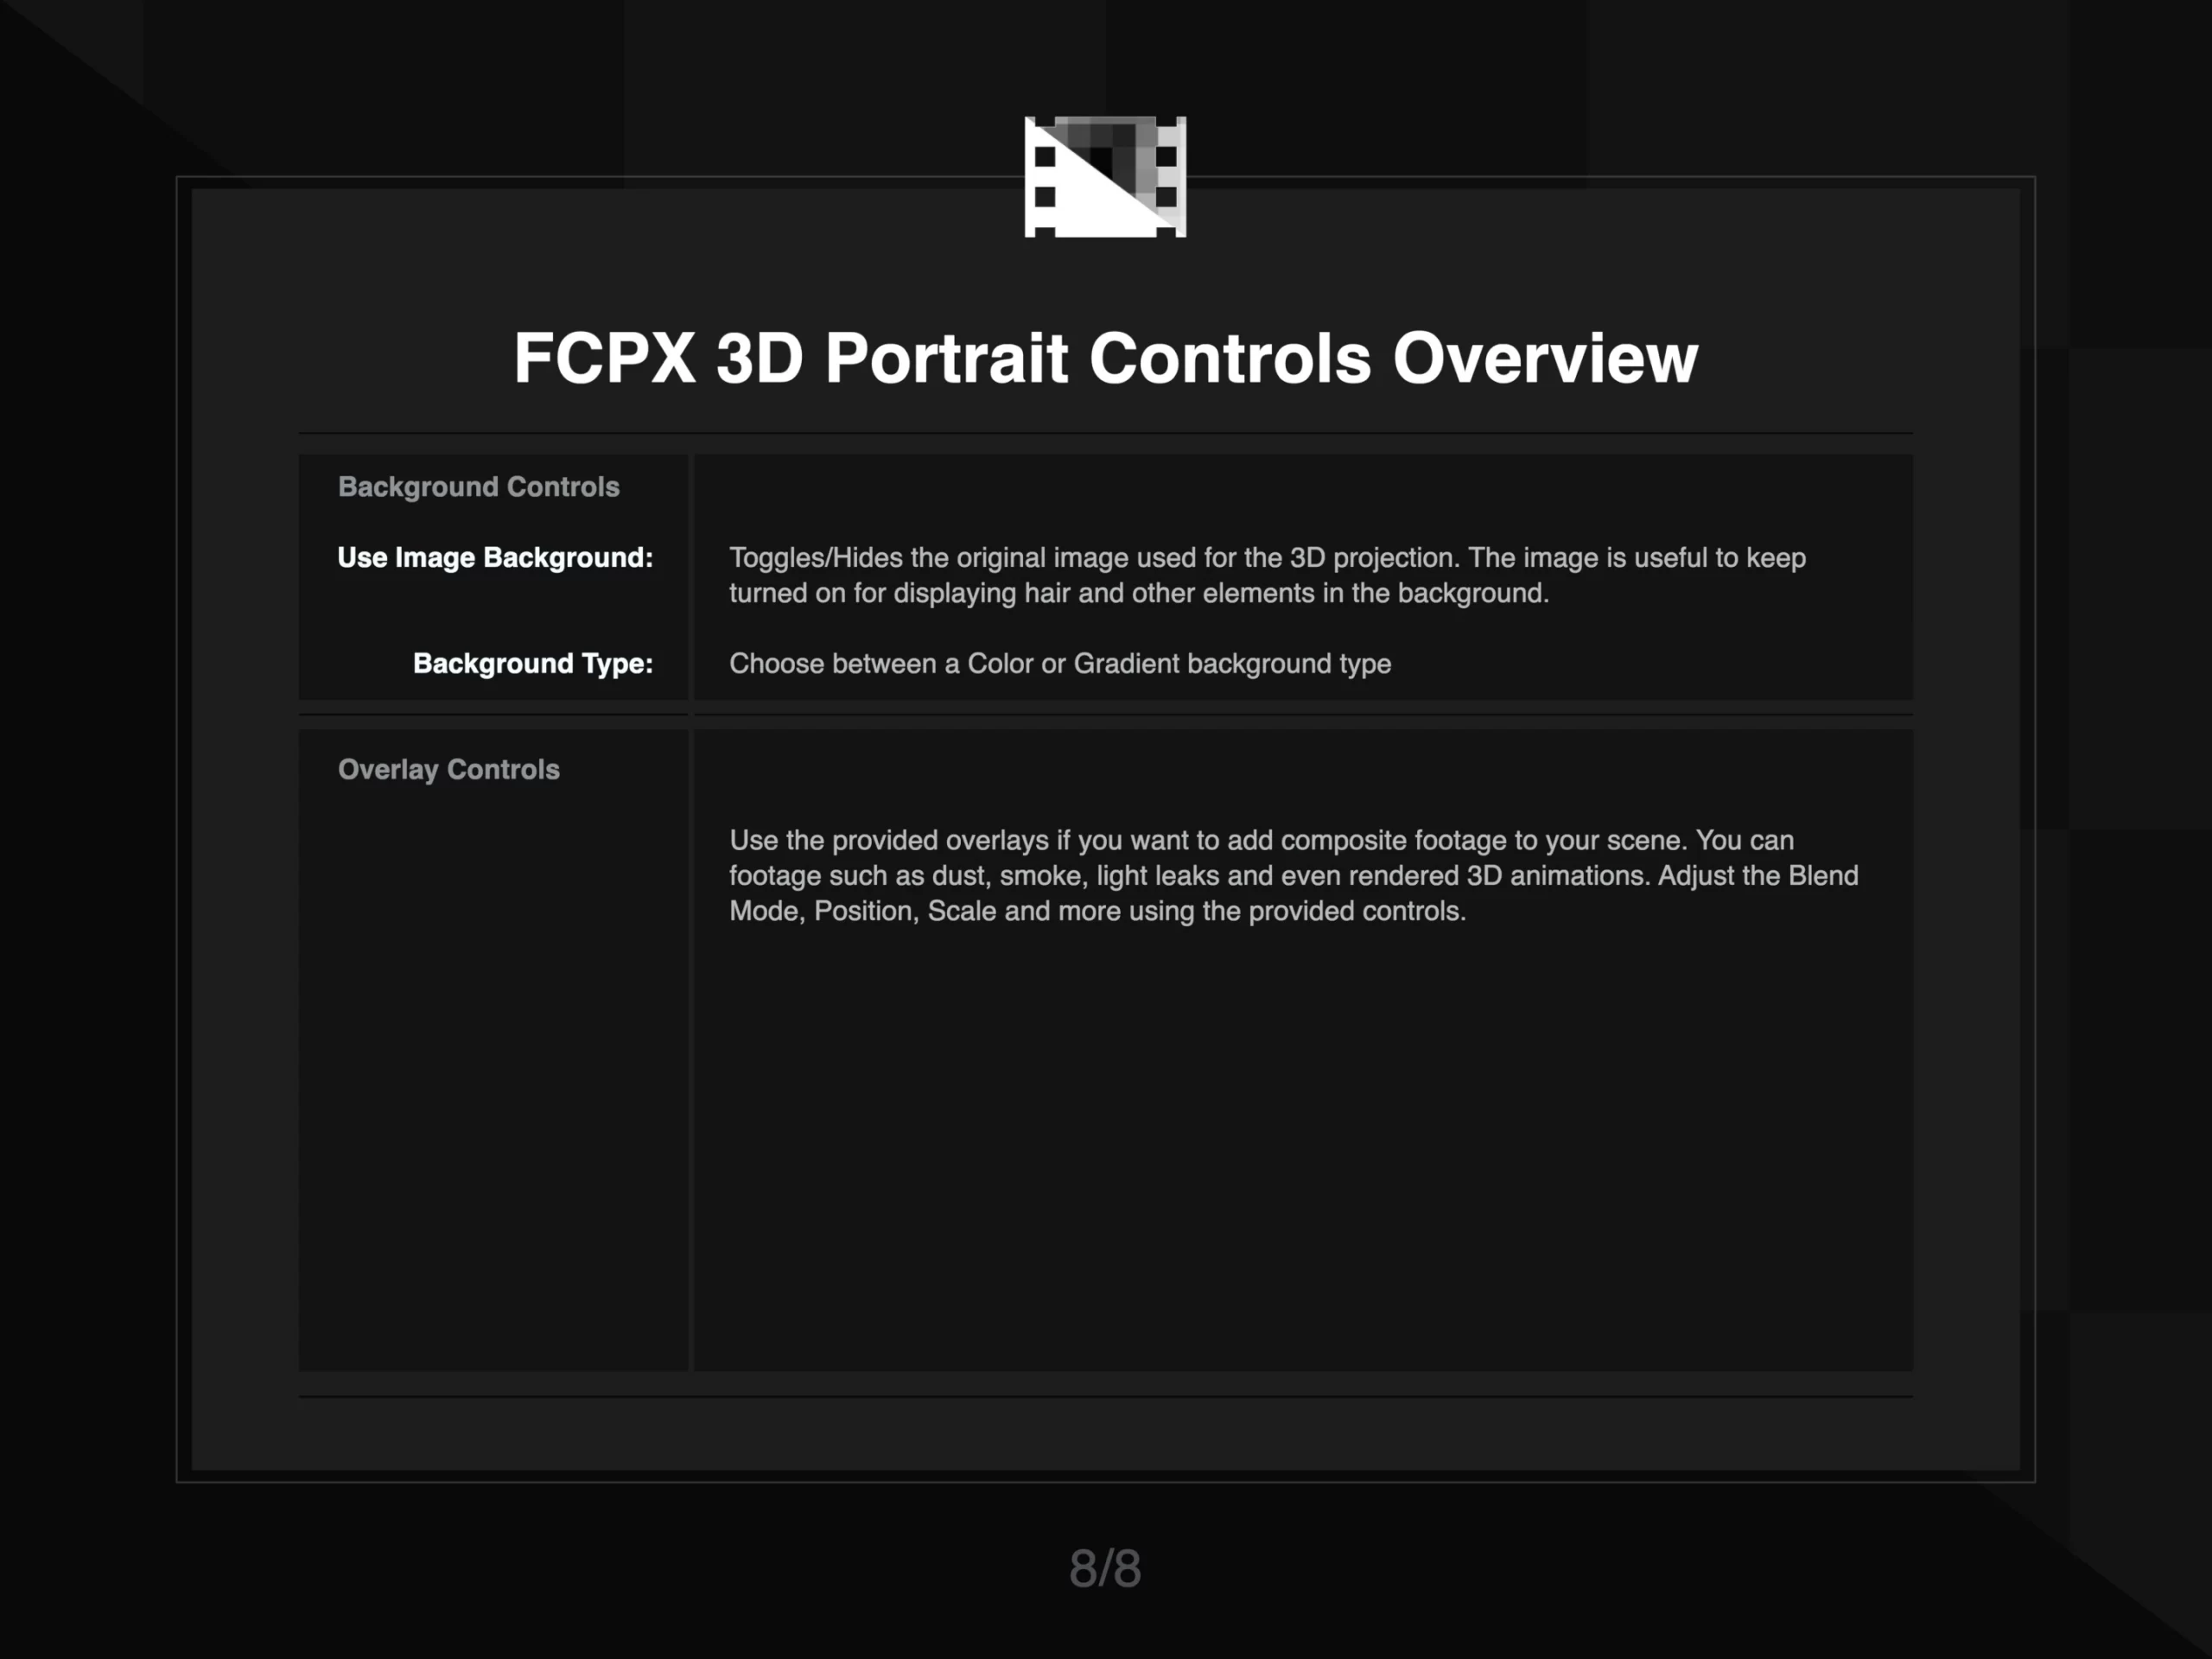 FCPX 3D Portrait Instruction 8 of 8